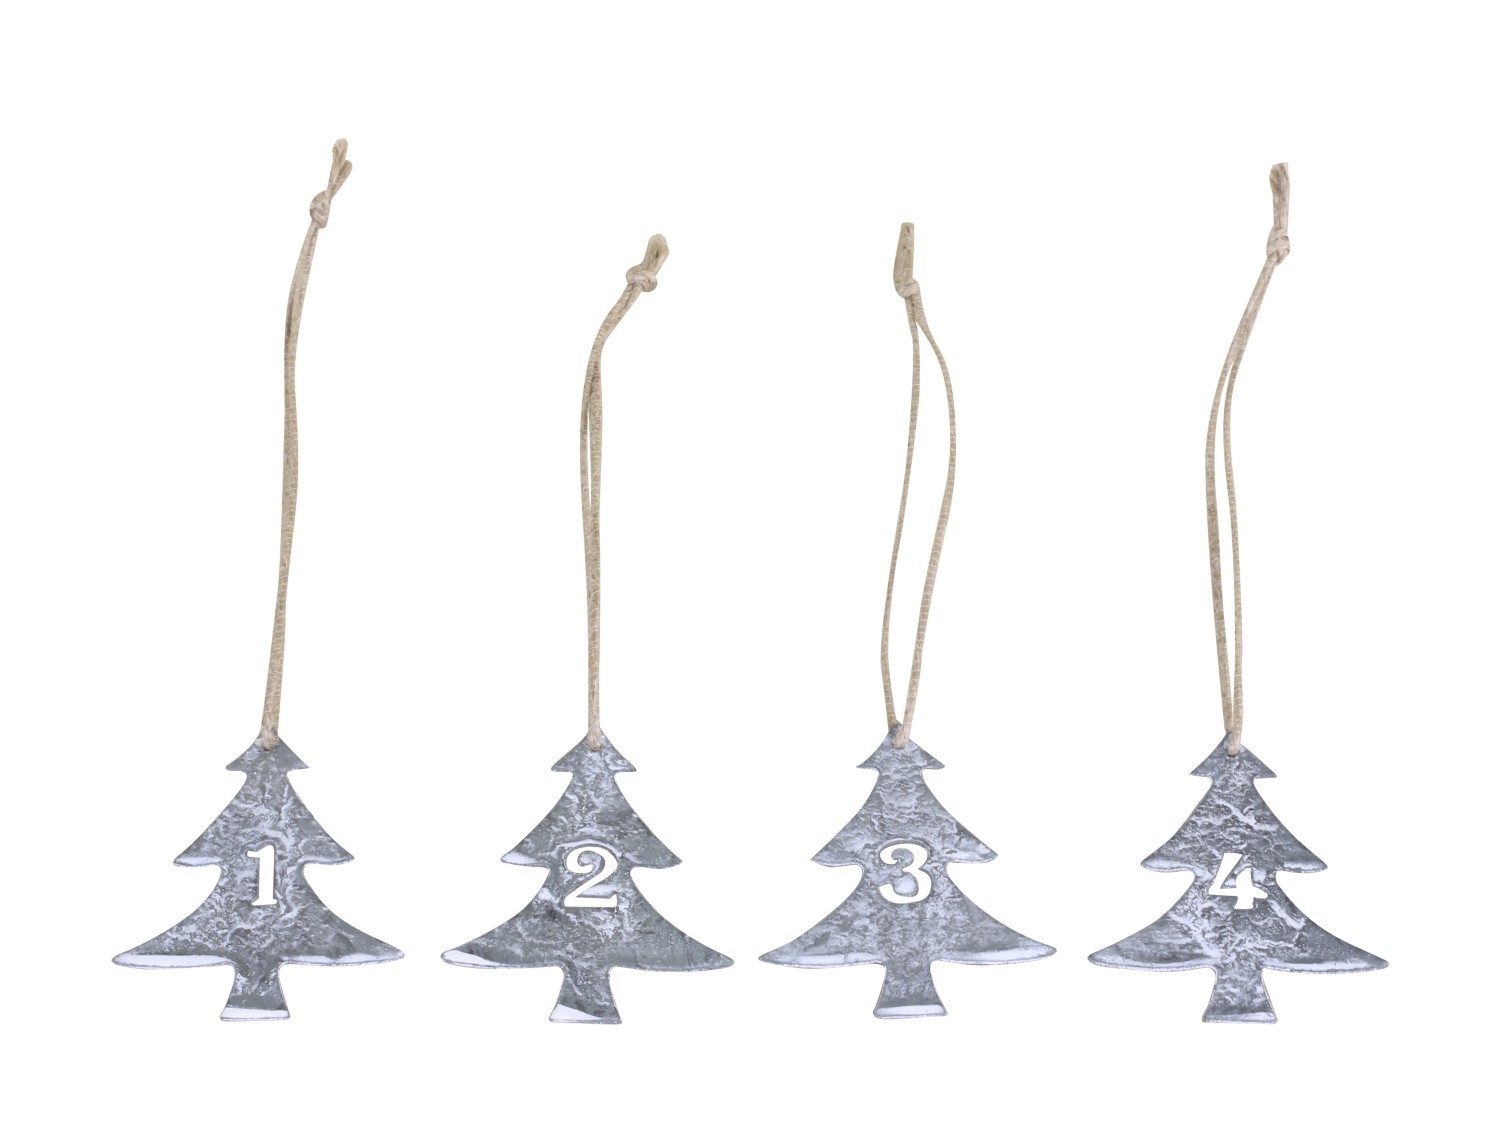 Šedé kovové vánoční stromky s čísly 1-4 na svíčky - 5*6cm Chic Antique